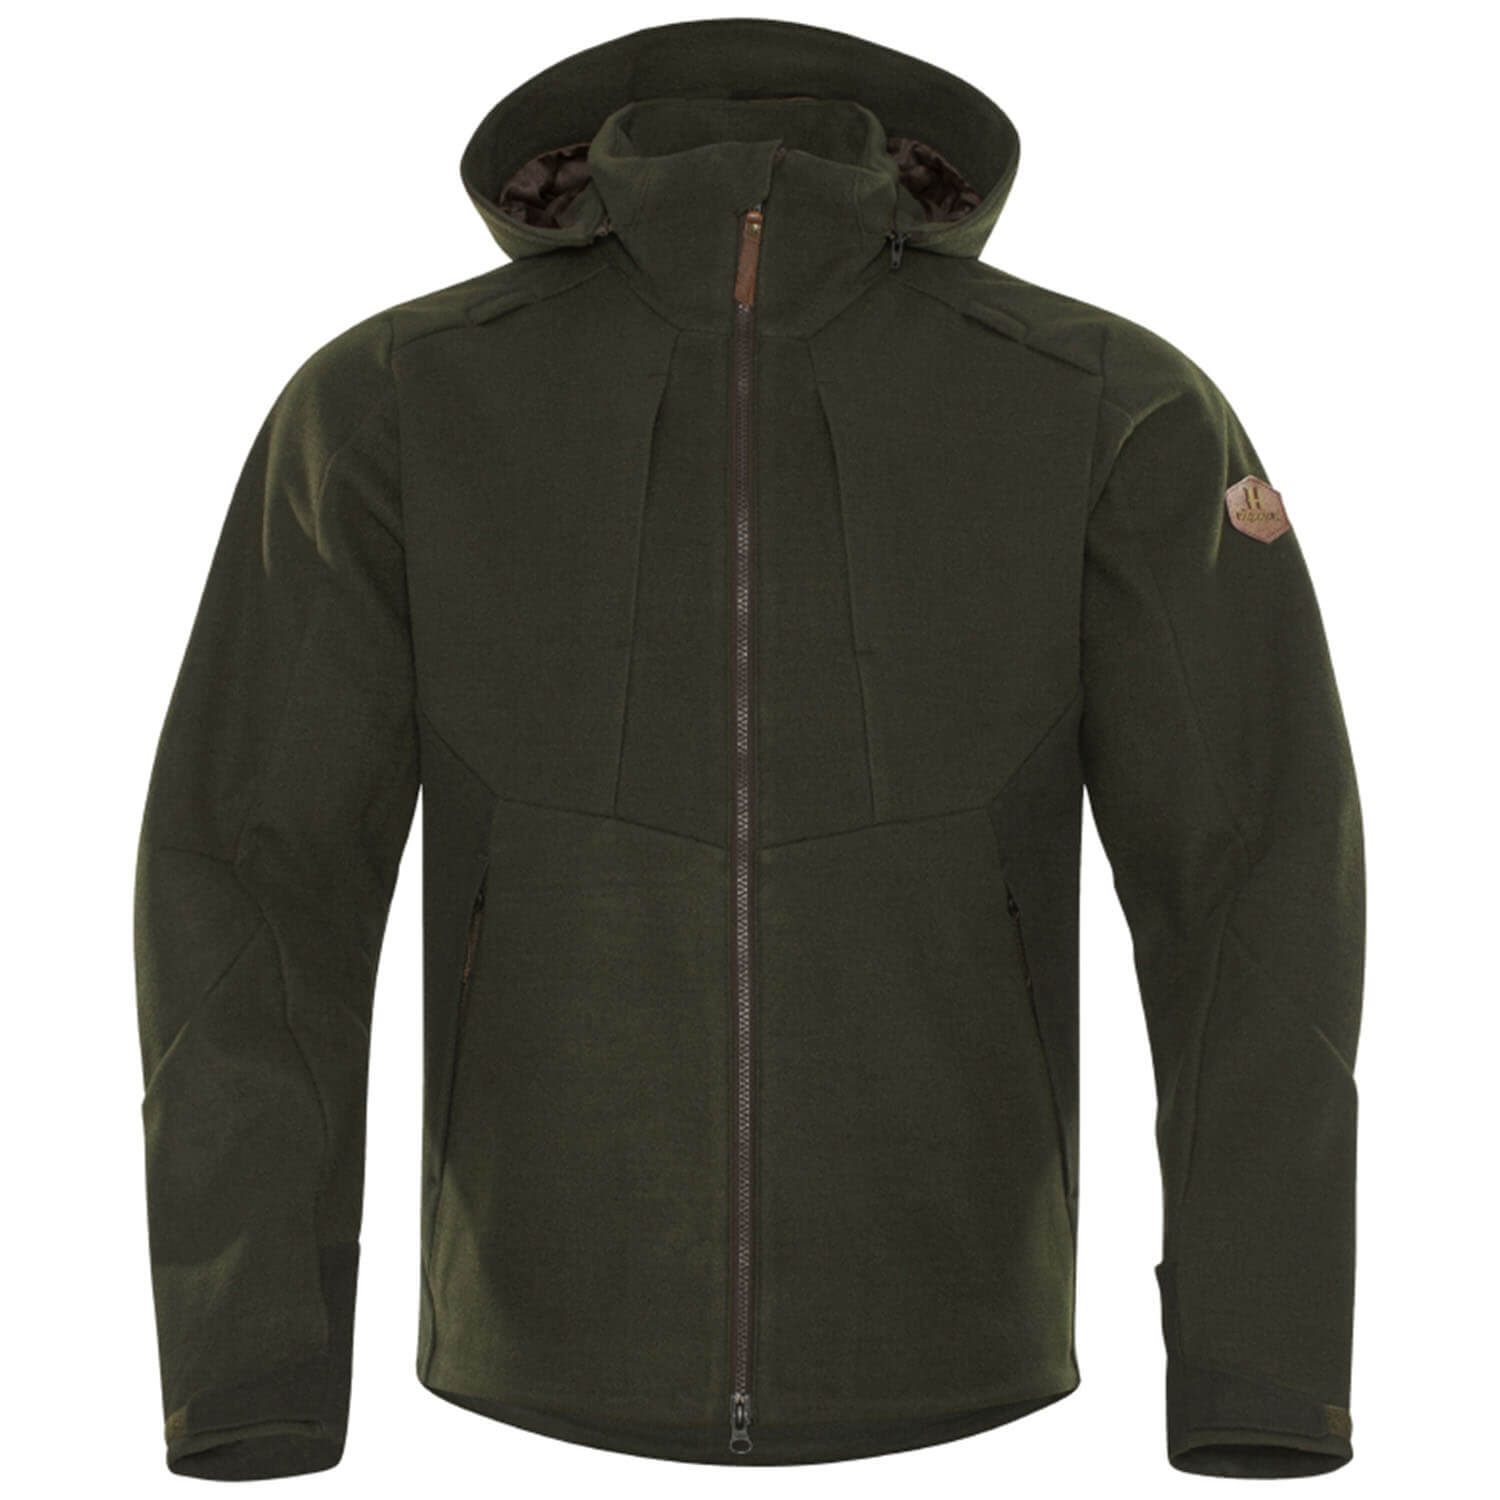 Härkila hunting jacket Metso hybrid